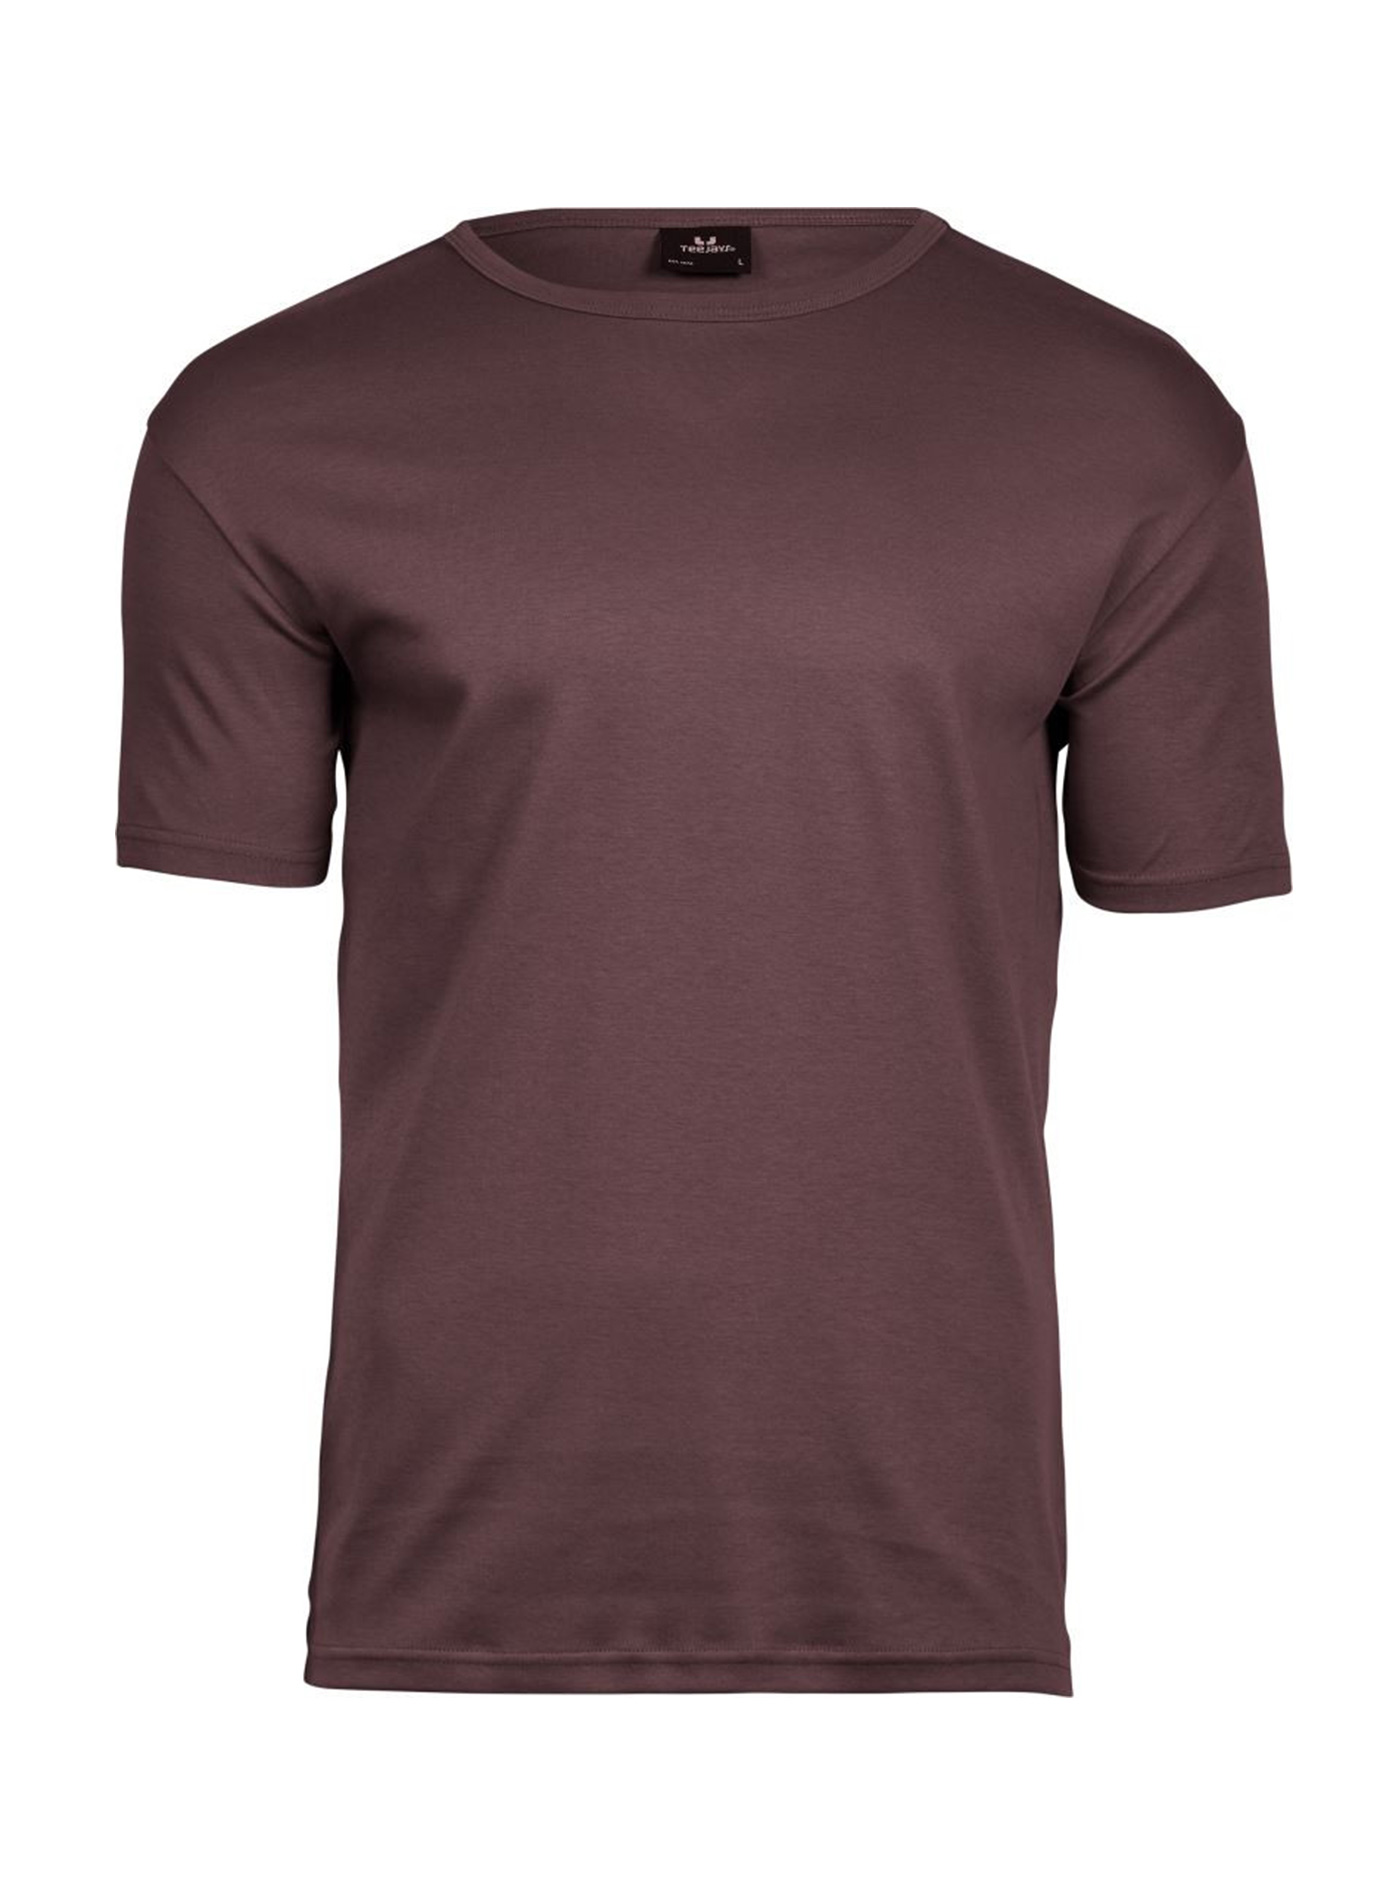 Silné bavlněné tričko Tee Jays Interlock - Hnědočervená 3XL